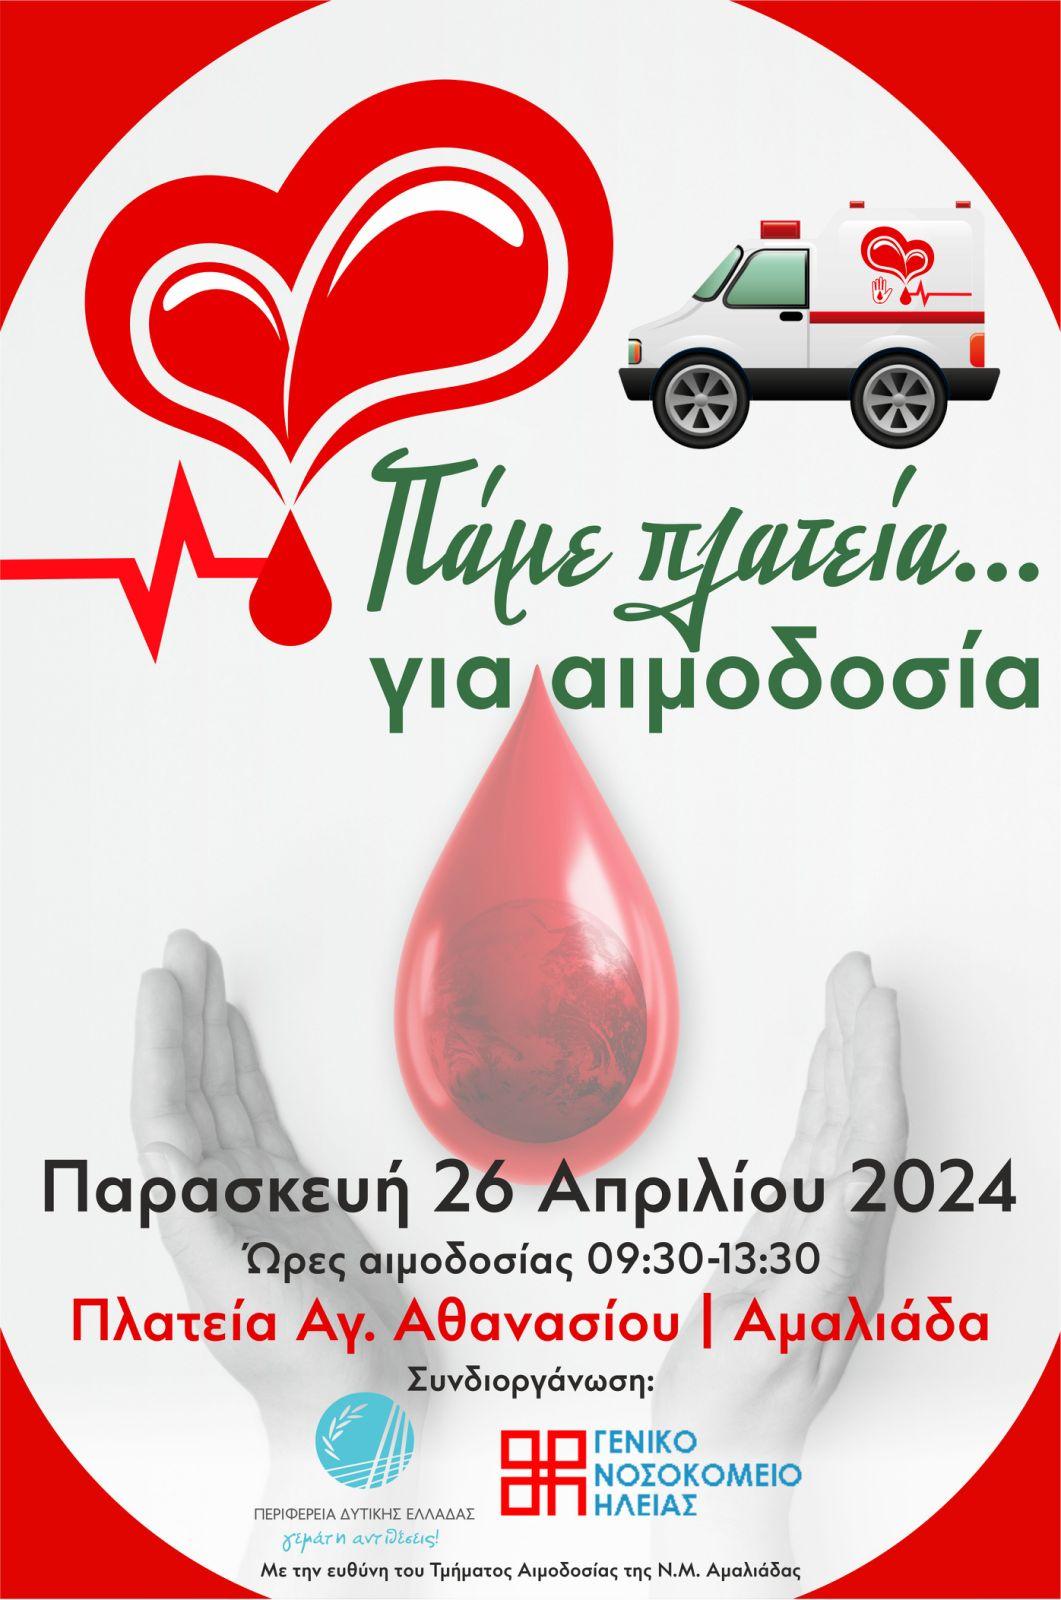 Δελτίο τύπου - Π.Ε. Ηλείας: «Πάμε πλατεία… για αιμοδοσία» στην Αμαλιάδα